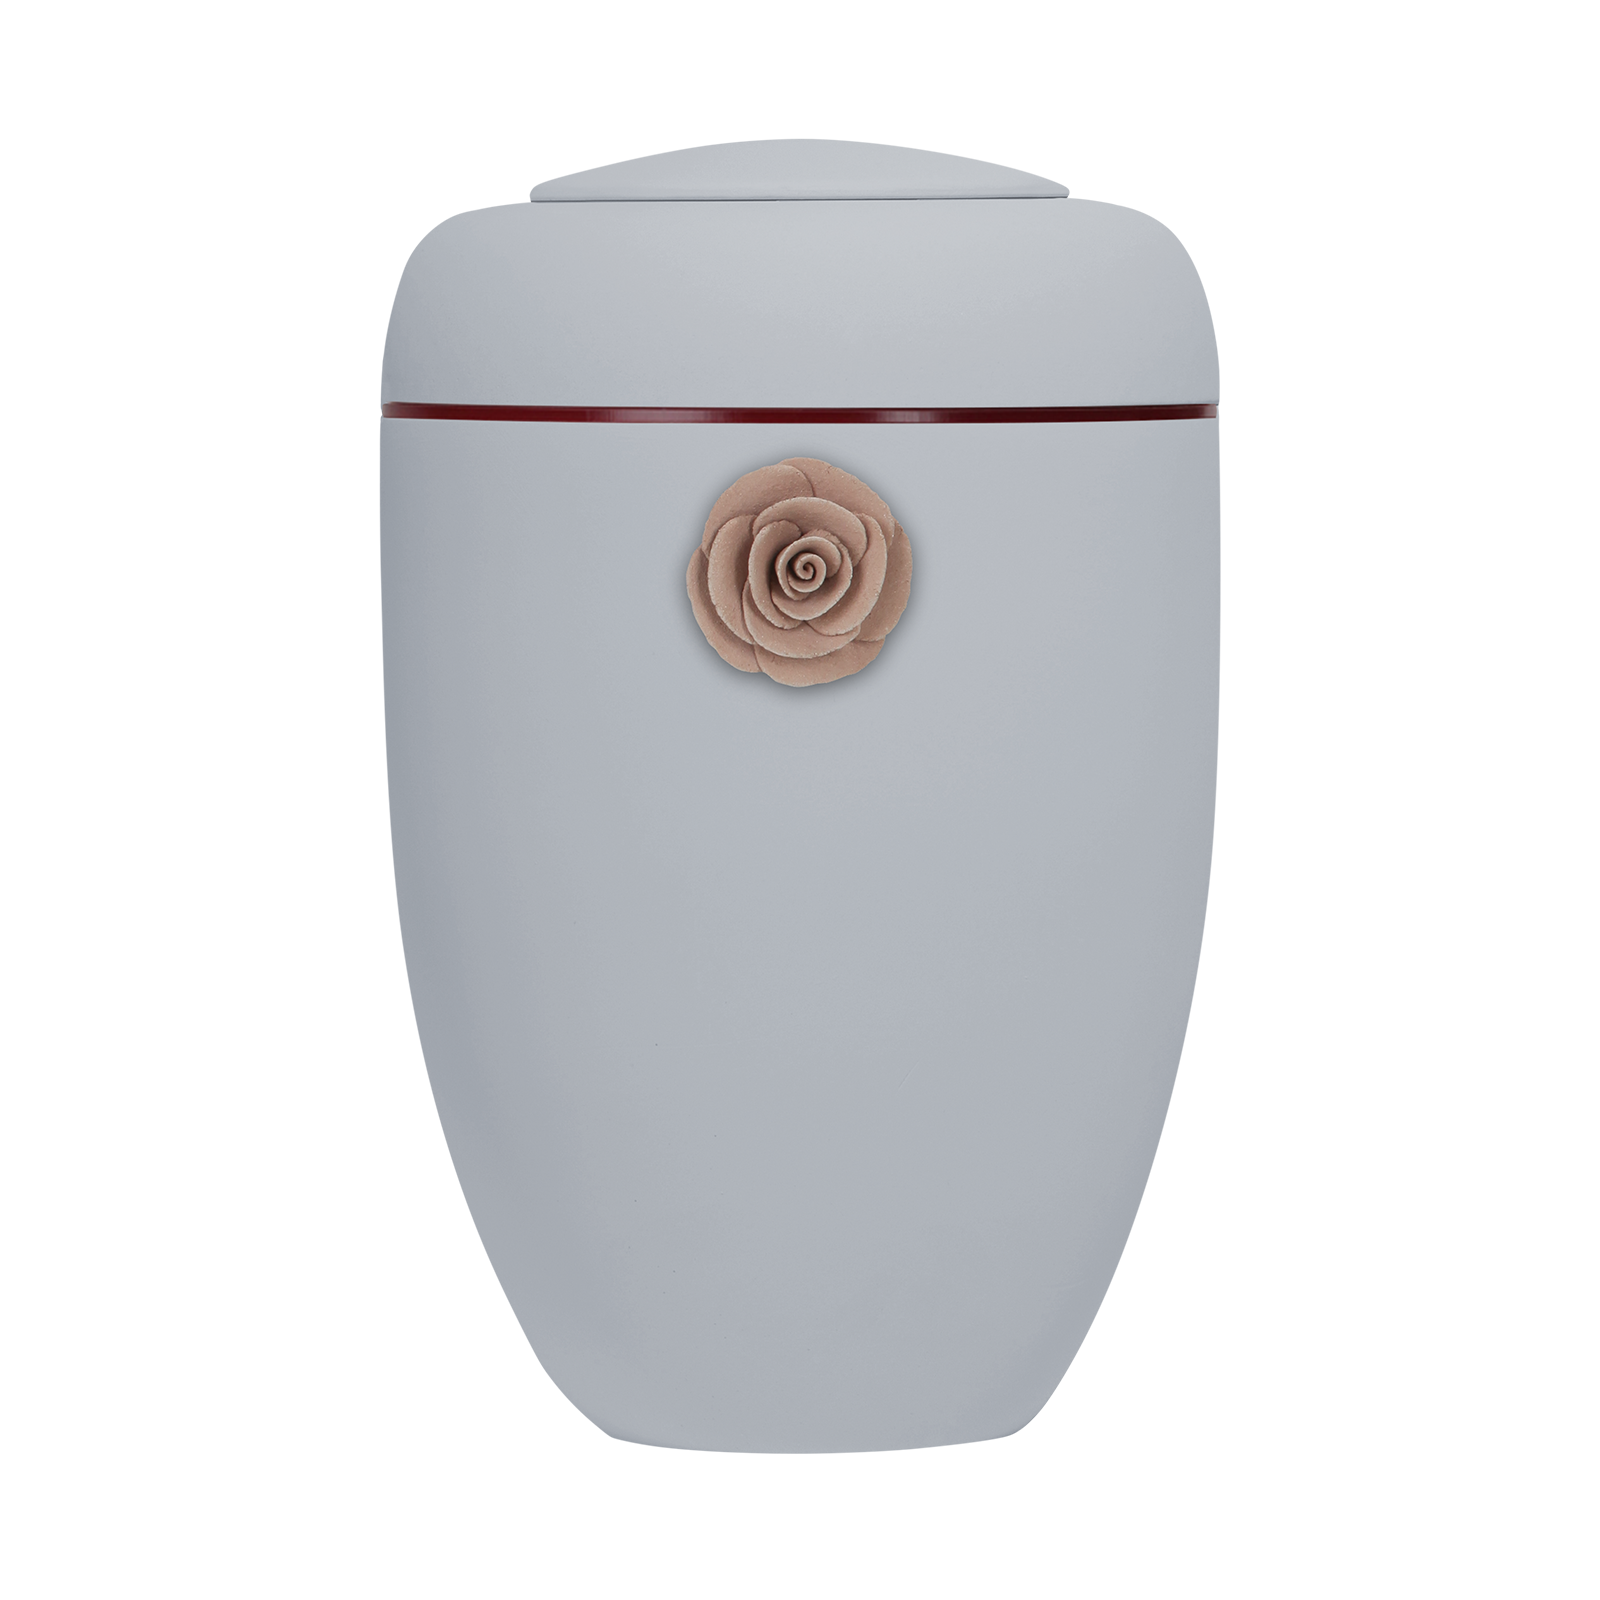 Hellgraue Symbol-Urne mit roter Tonrose und roter Plexiglasscheibe